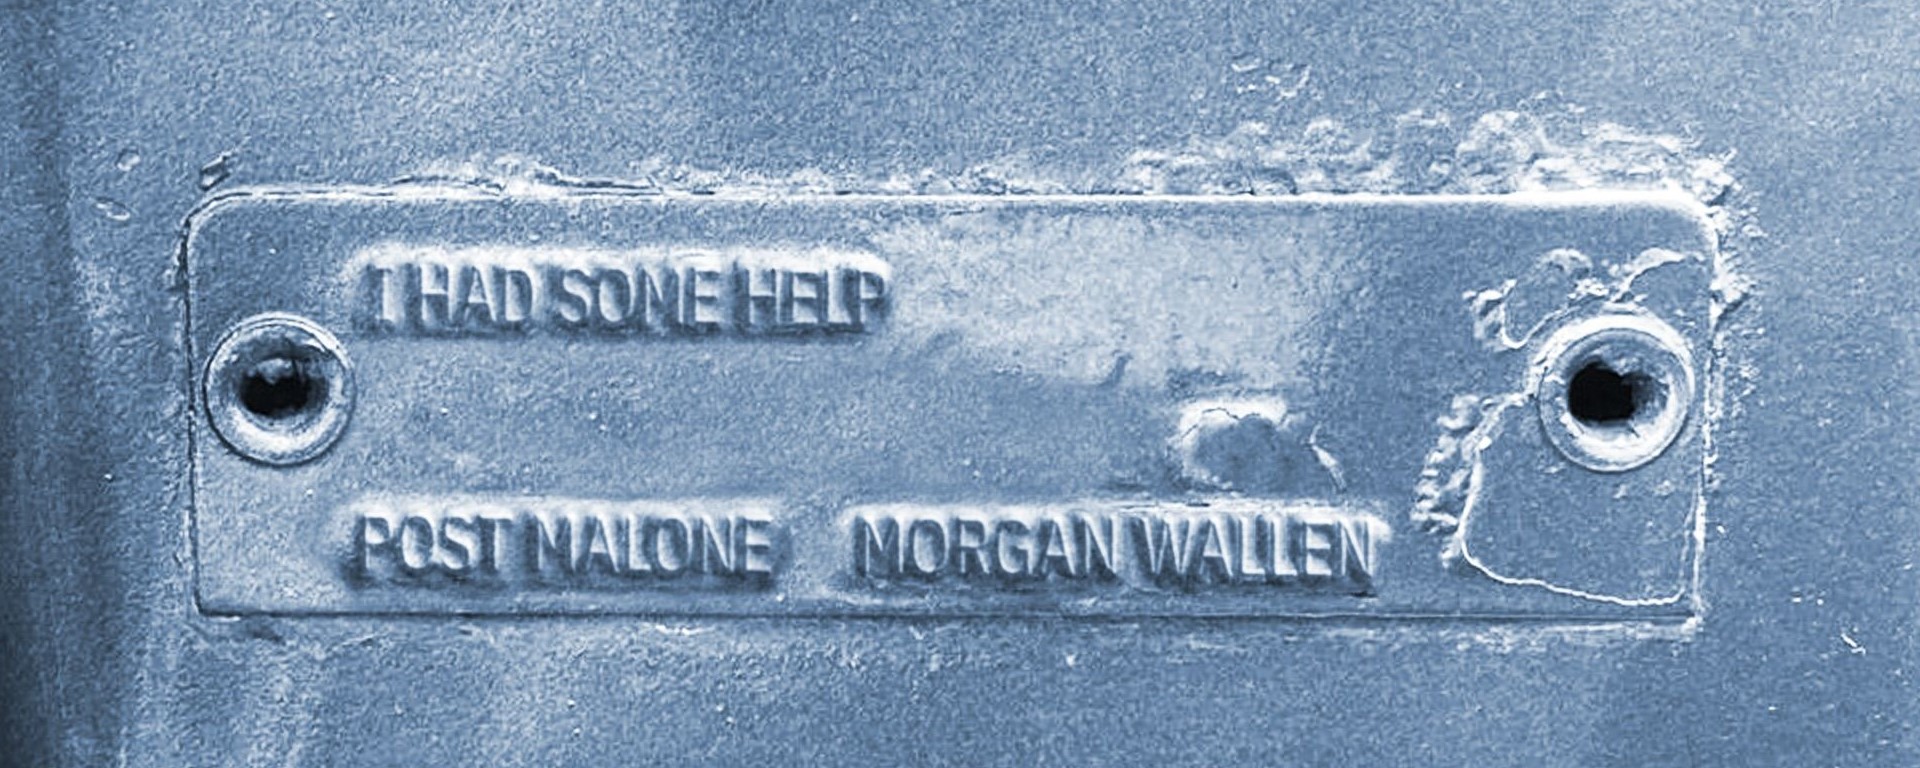 Post Malone a Morgan Wallen vytvorili rádiový hit s prvkami country.